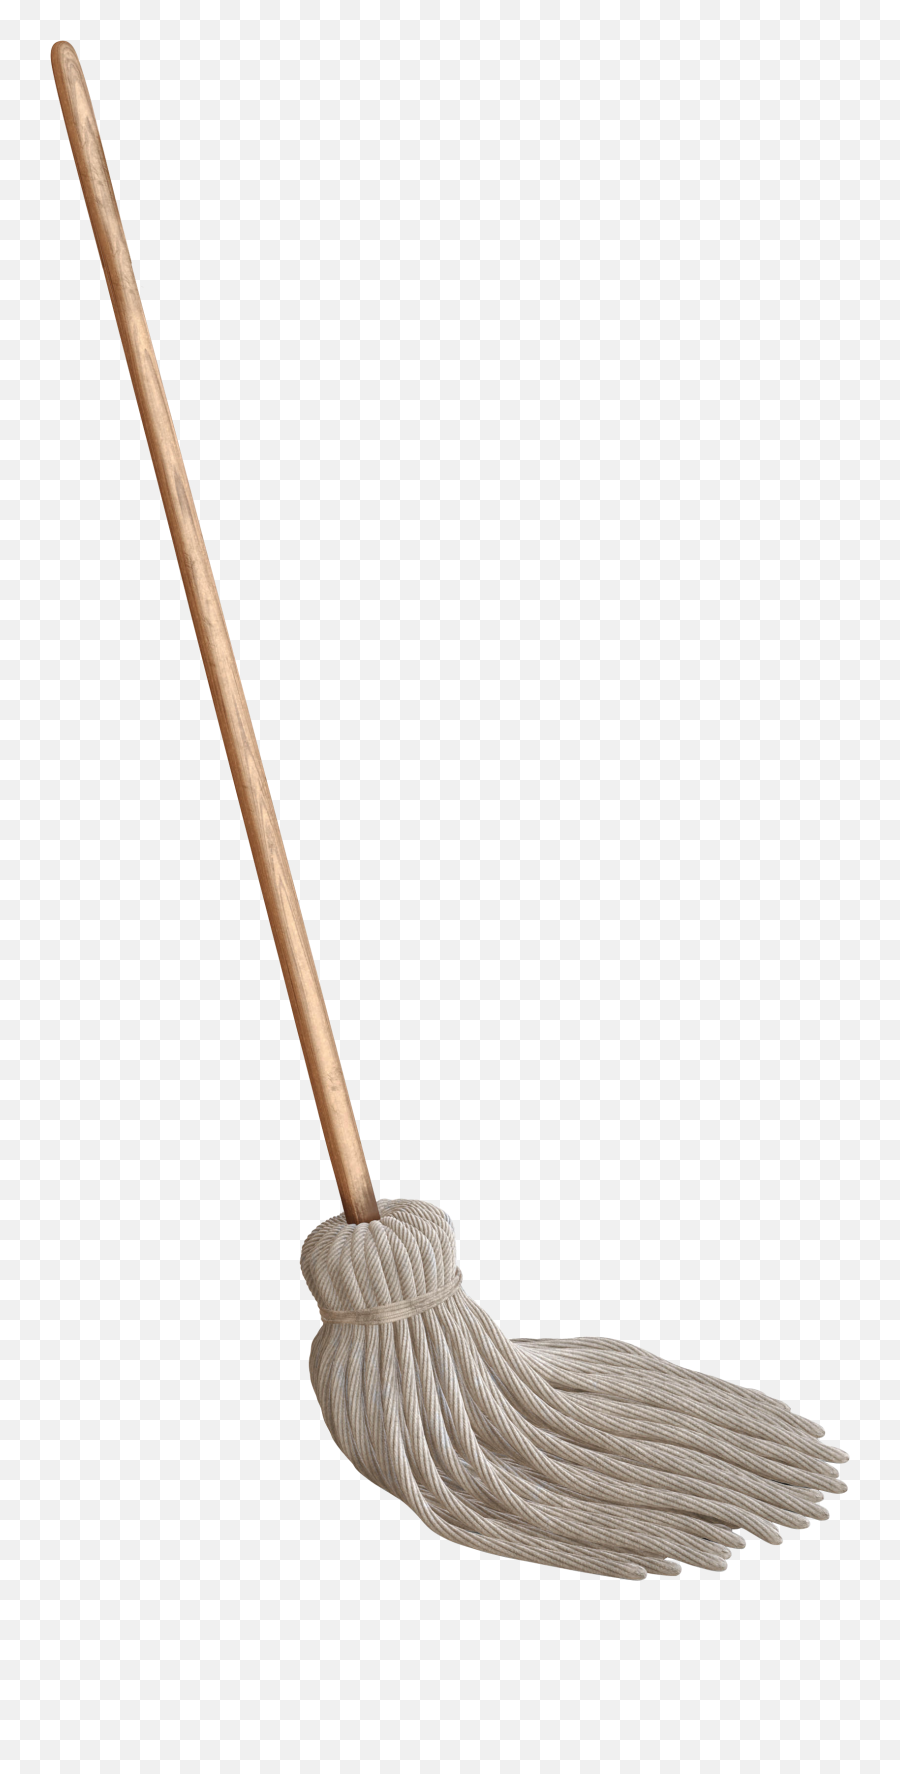 Png Images Pngs Mop Mops Bucket - Personaje De La Ratatouille,Mop Png